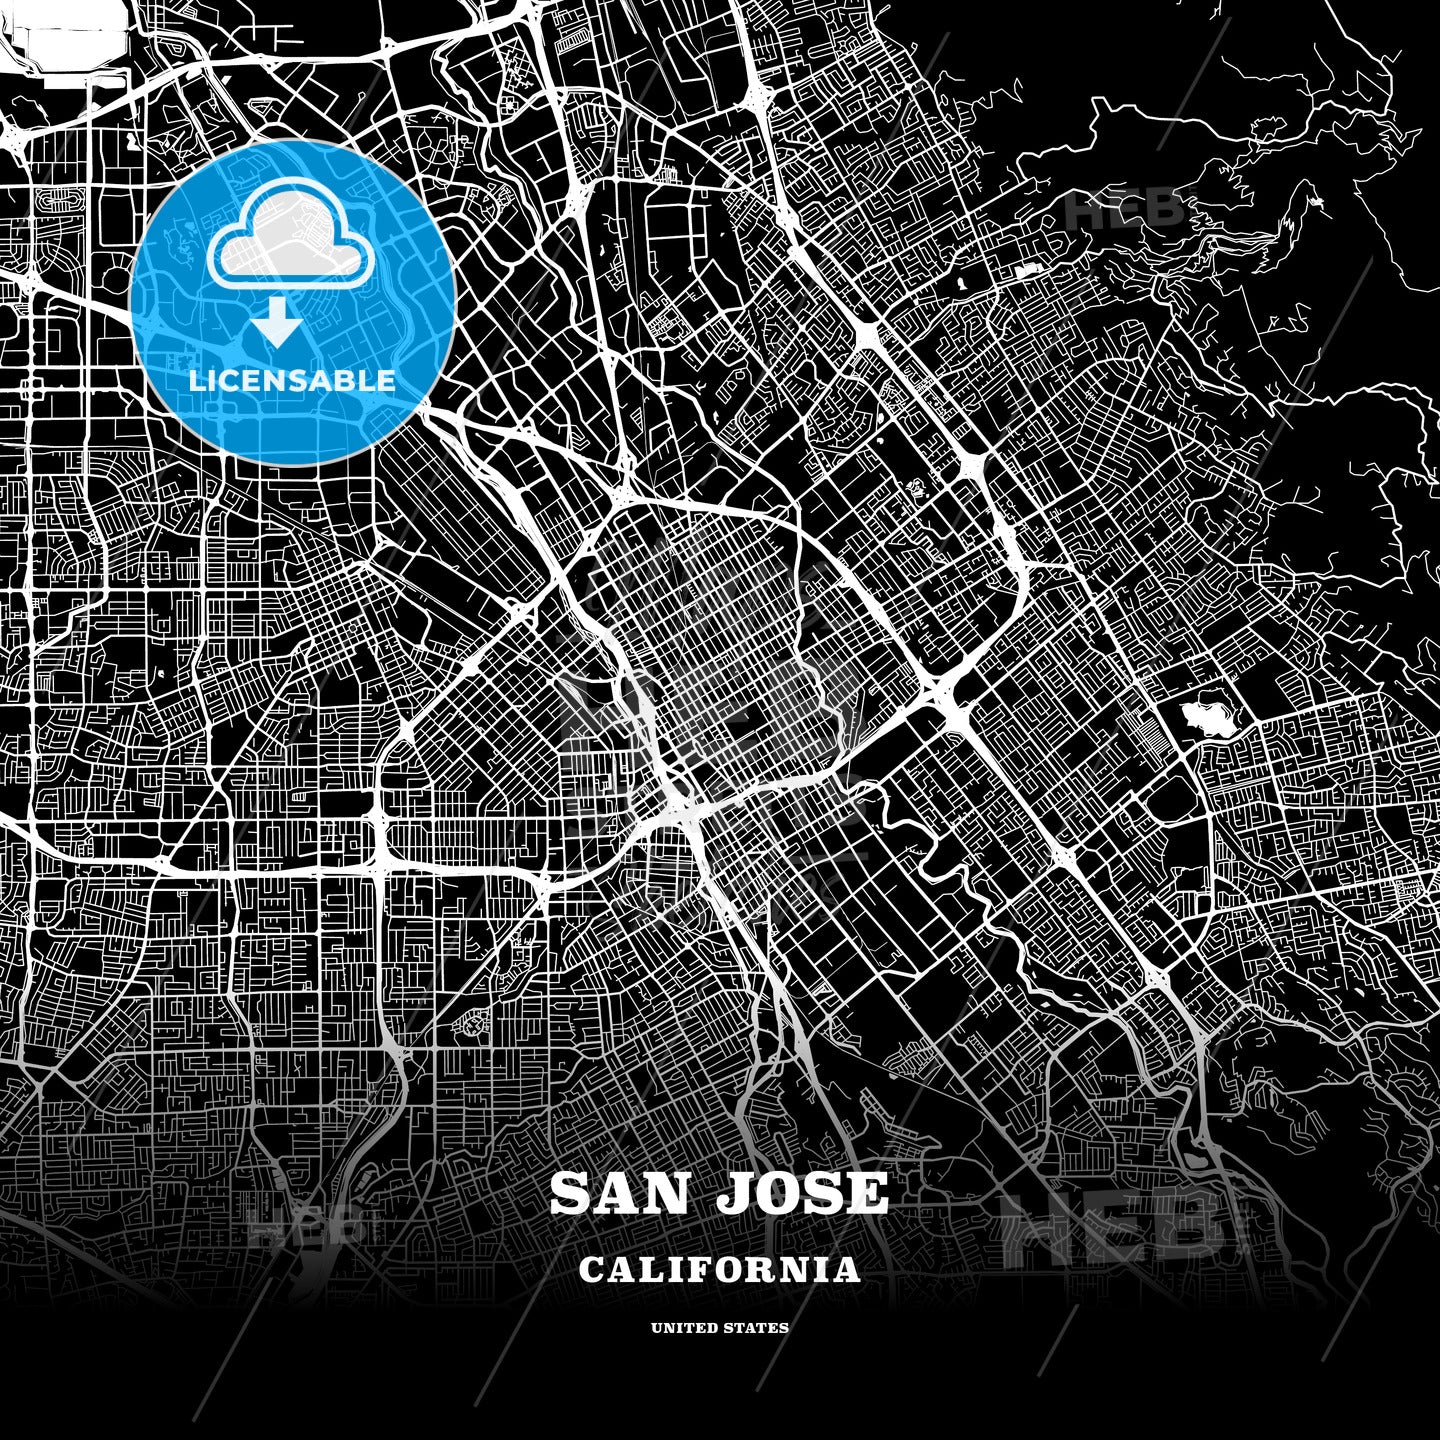 San Jose, California, USA map